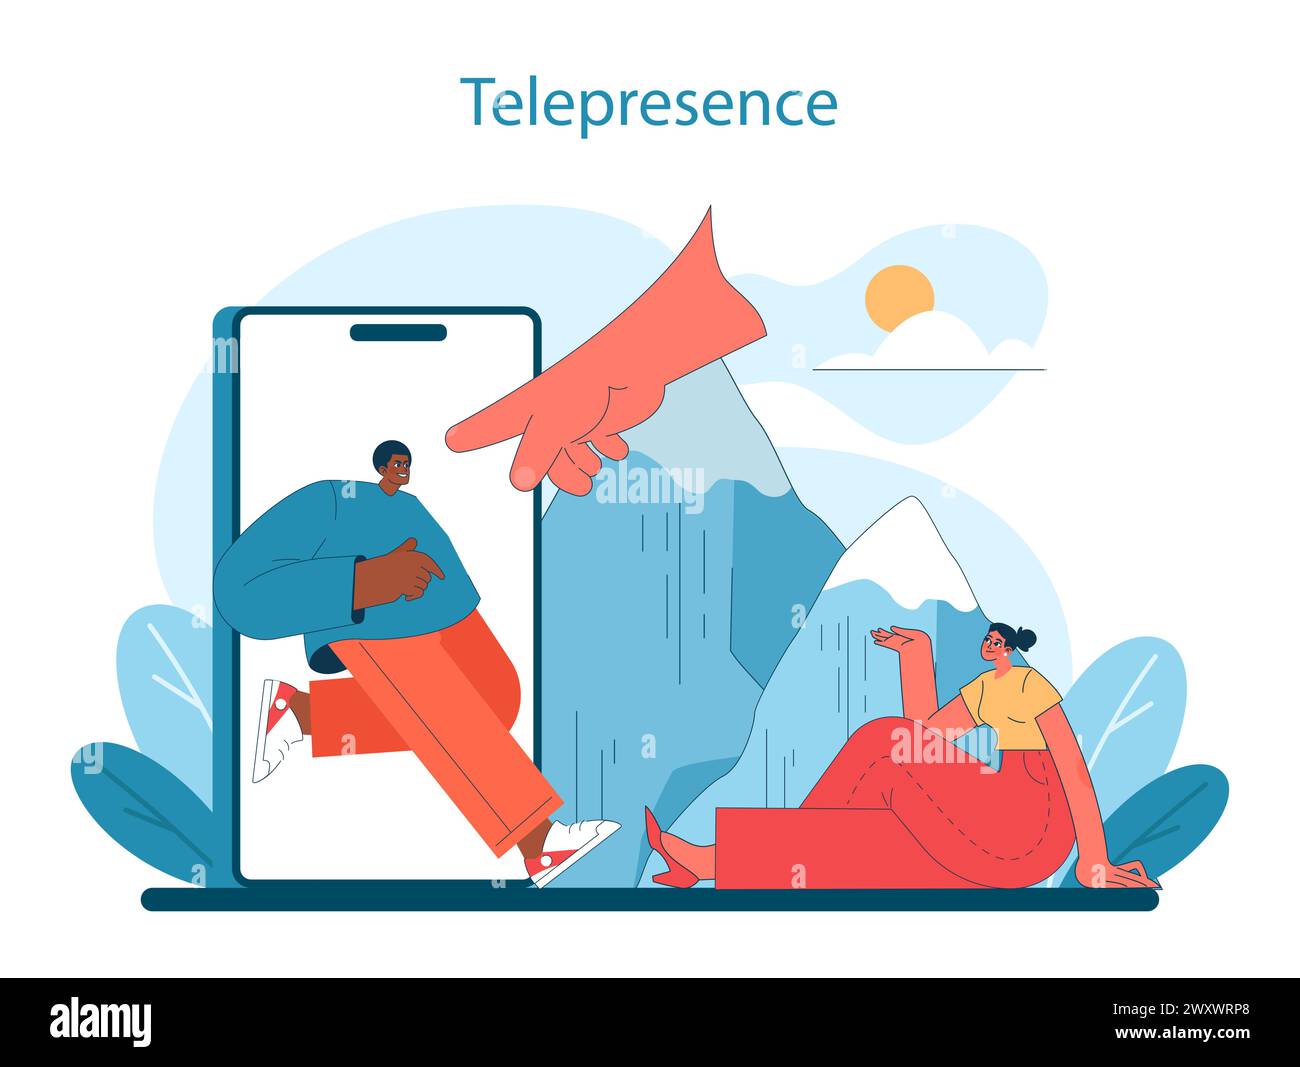 Telepresence im virtuellen Tourismus. Der Mensch interagiert mit einem riesigen Smartphone und überbrückt Entfernungen mit innovativer Technologie. Vektorabbildung. Stock Vektor